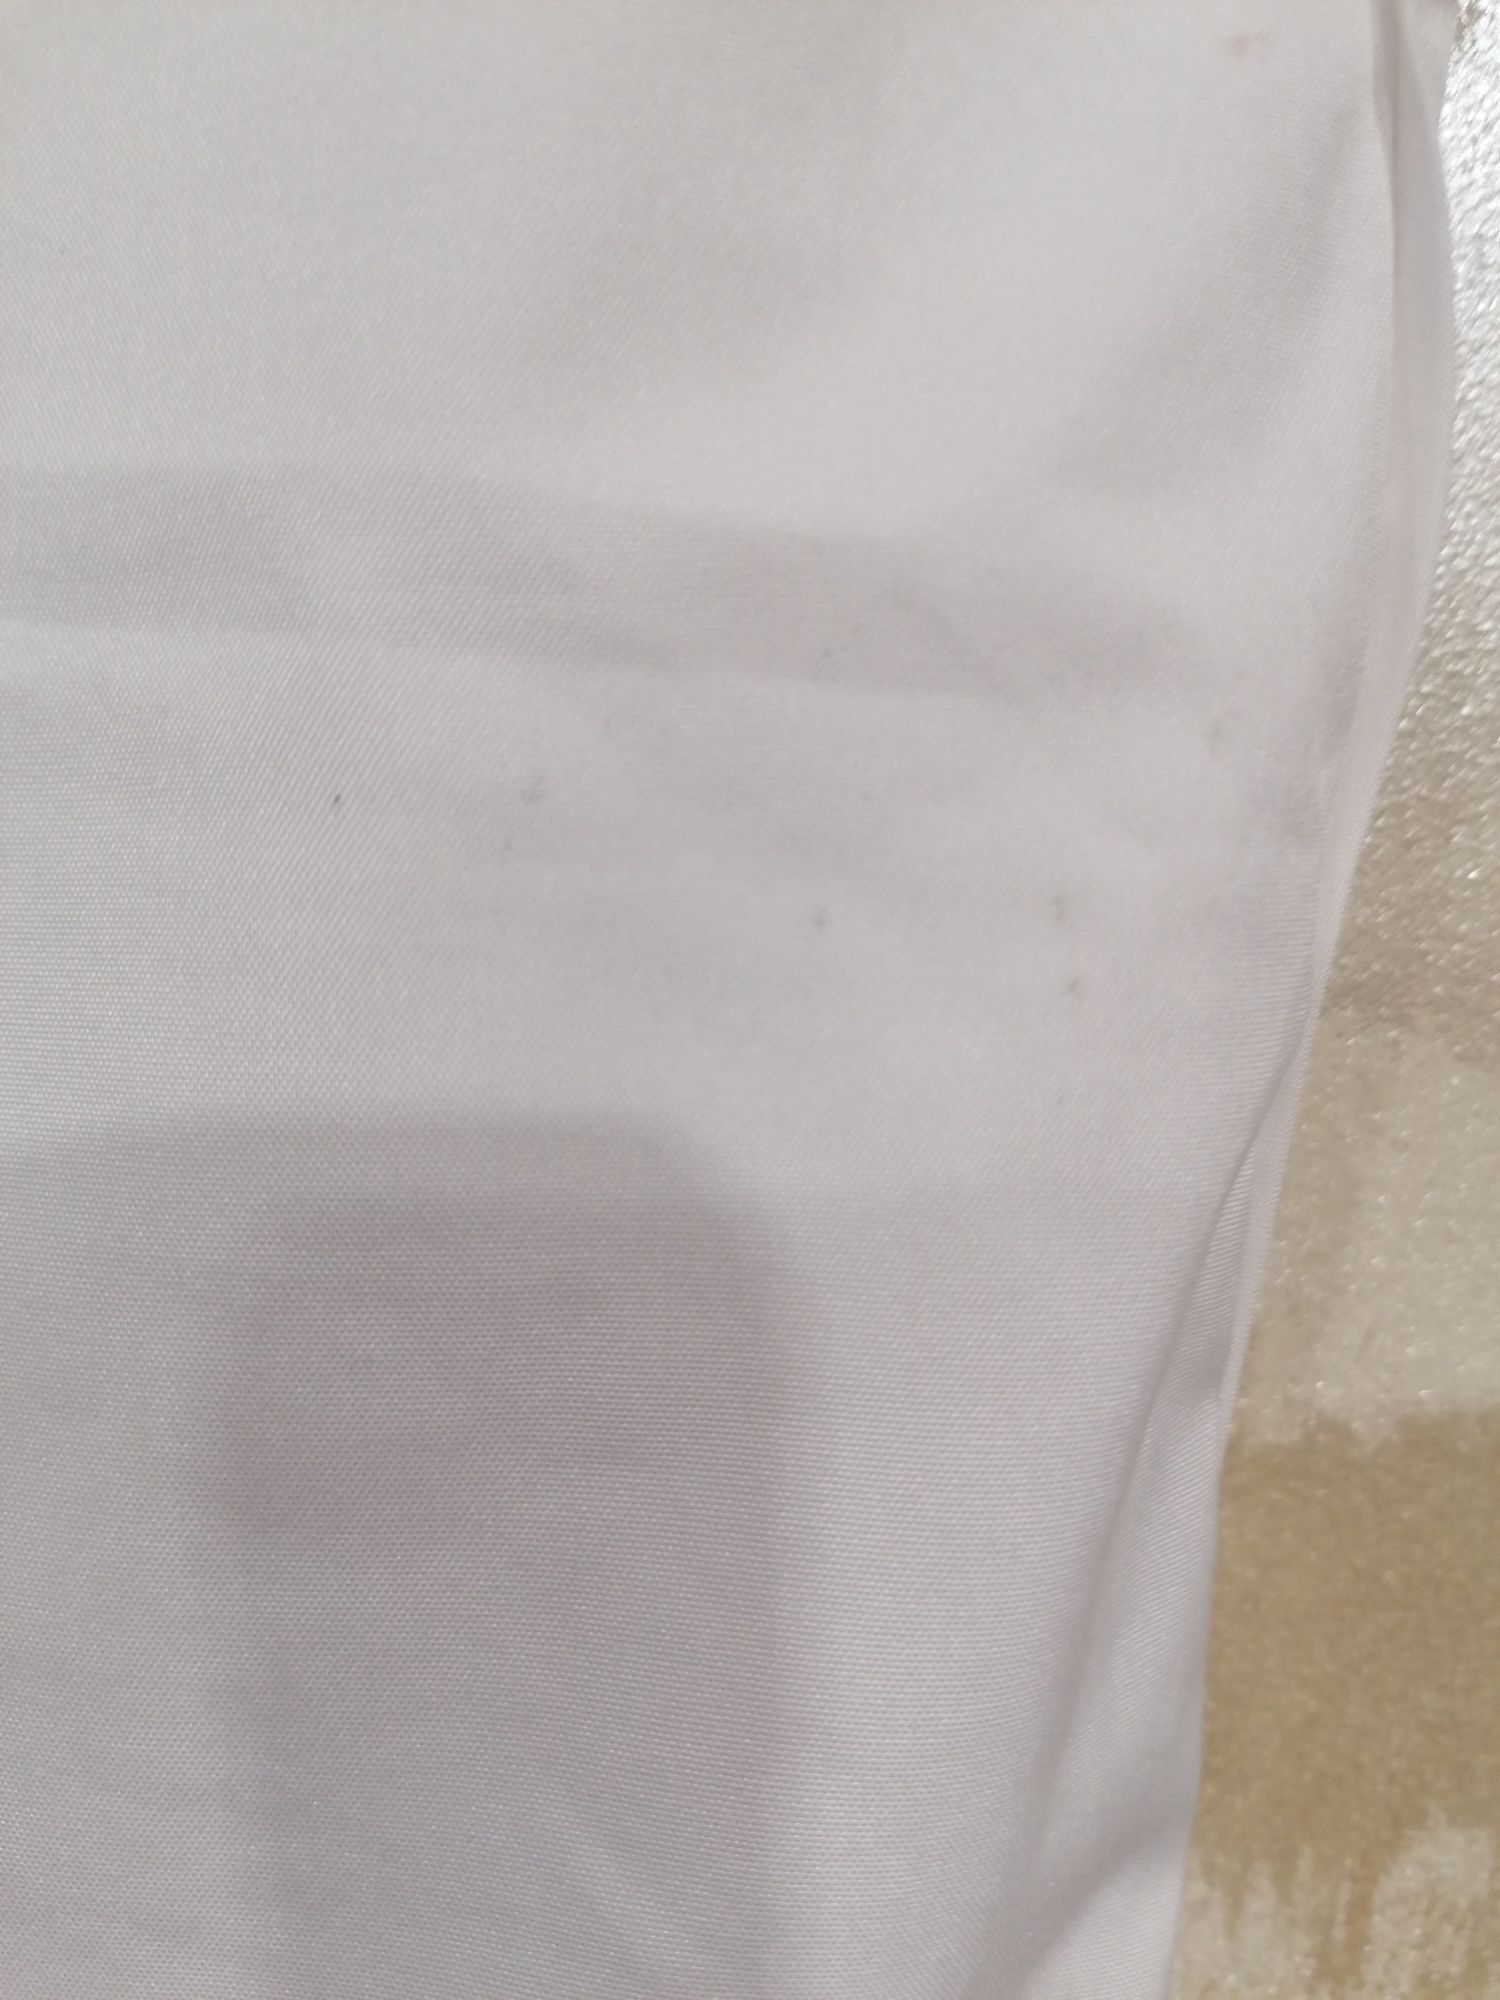 Białe dresowe spodenki marki Nike rozmiar XL/42/14